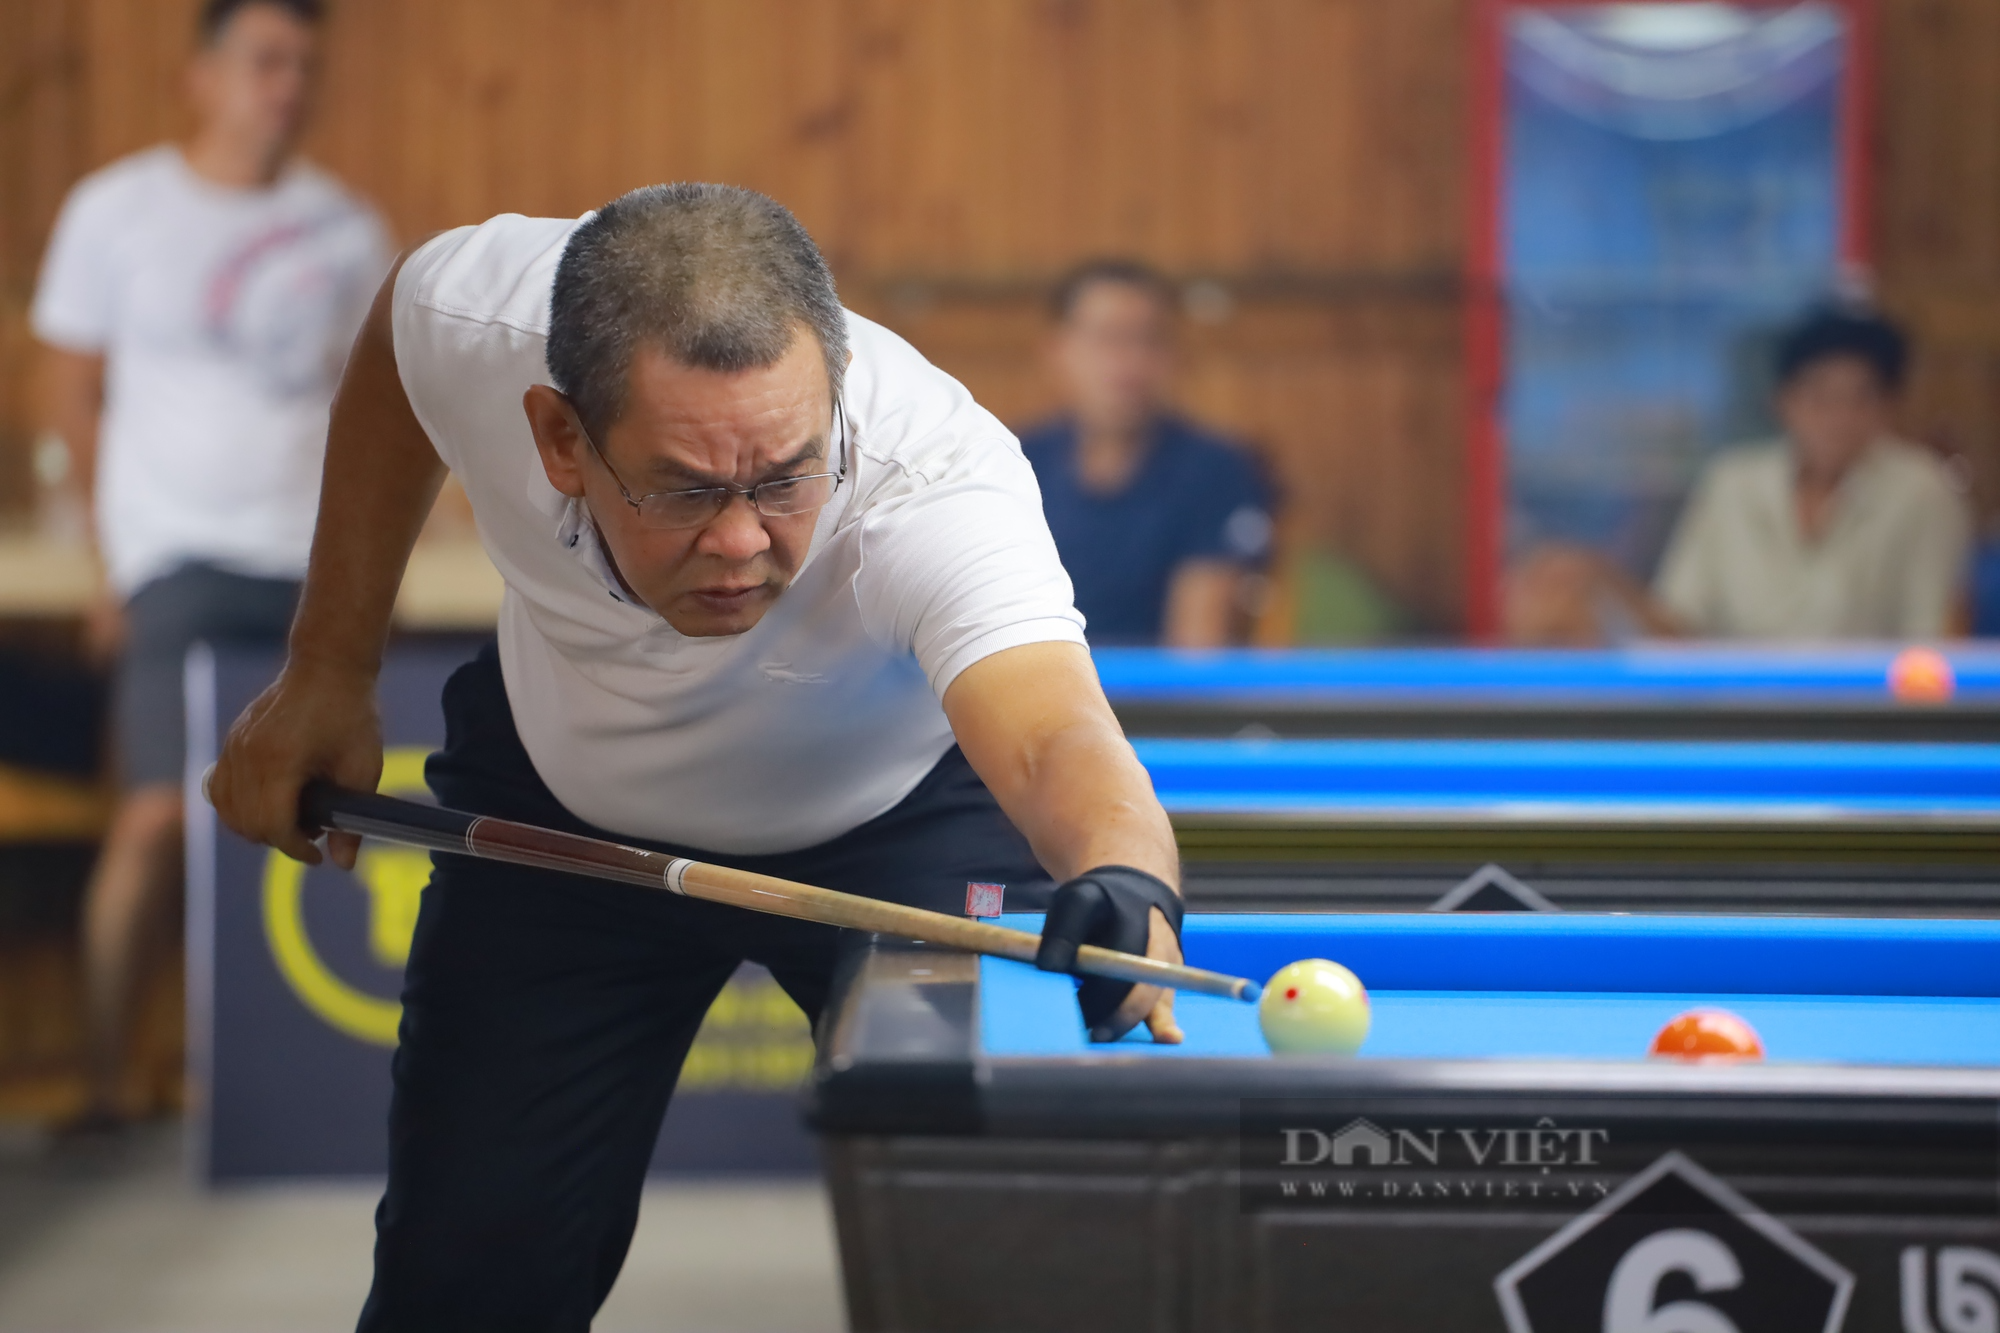 Đánh bại huyền thoại Lý Thế Vinh, Đào Văn Ly vô địch Giải billiards carom 3 băng Cúp HBSF 2023  - Ảnh 1.